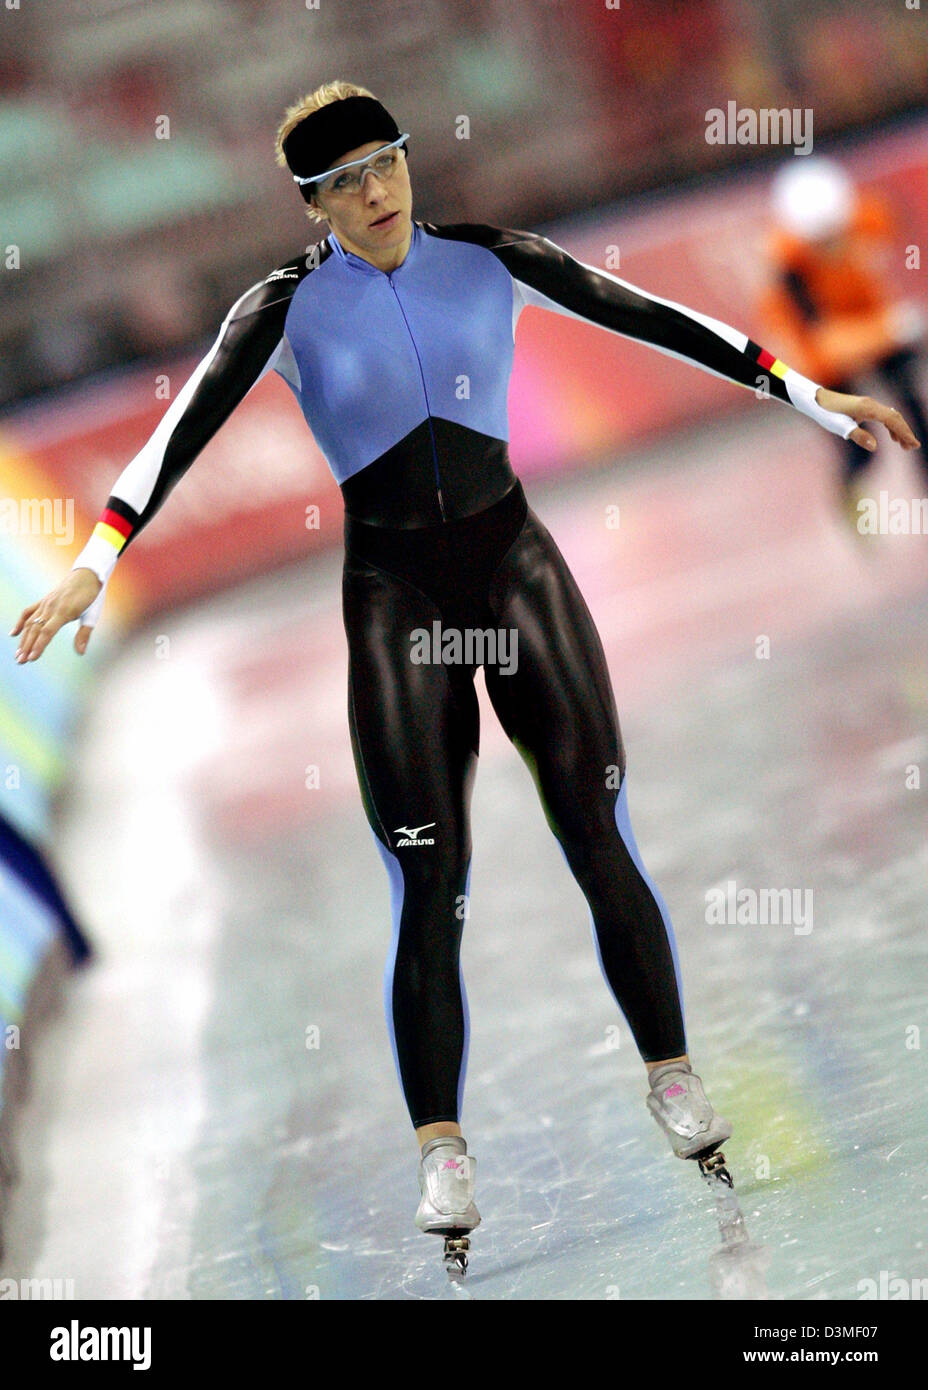 Deutsche Eisschnellläuferin Anni Friesinger führt eine Dehnübung während einer Übung auf der Eisbahn bei den Olympischen Winterspielen in Turin, Italien, Turin Mittwoch, 22. Februar 2006.  Friesinger gewann Bronze in der Frauen 1.500 m Eisschnelllauf Veranstaltung. Foto: Frank Mai Stockfoto